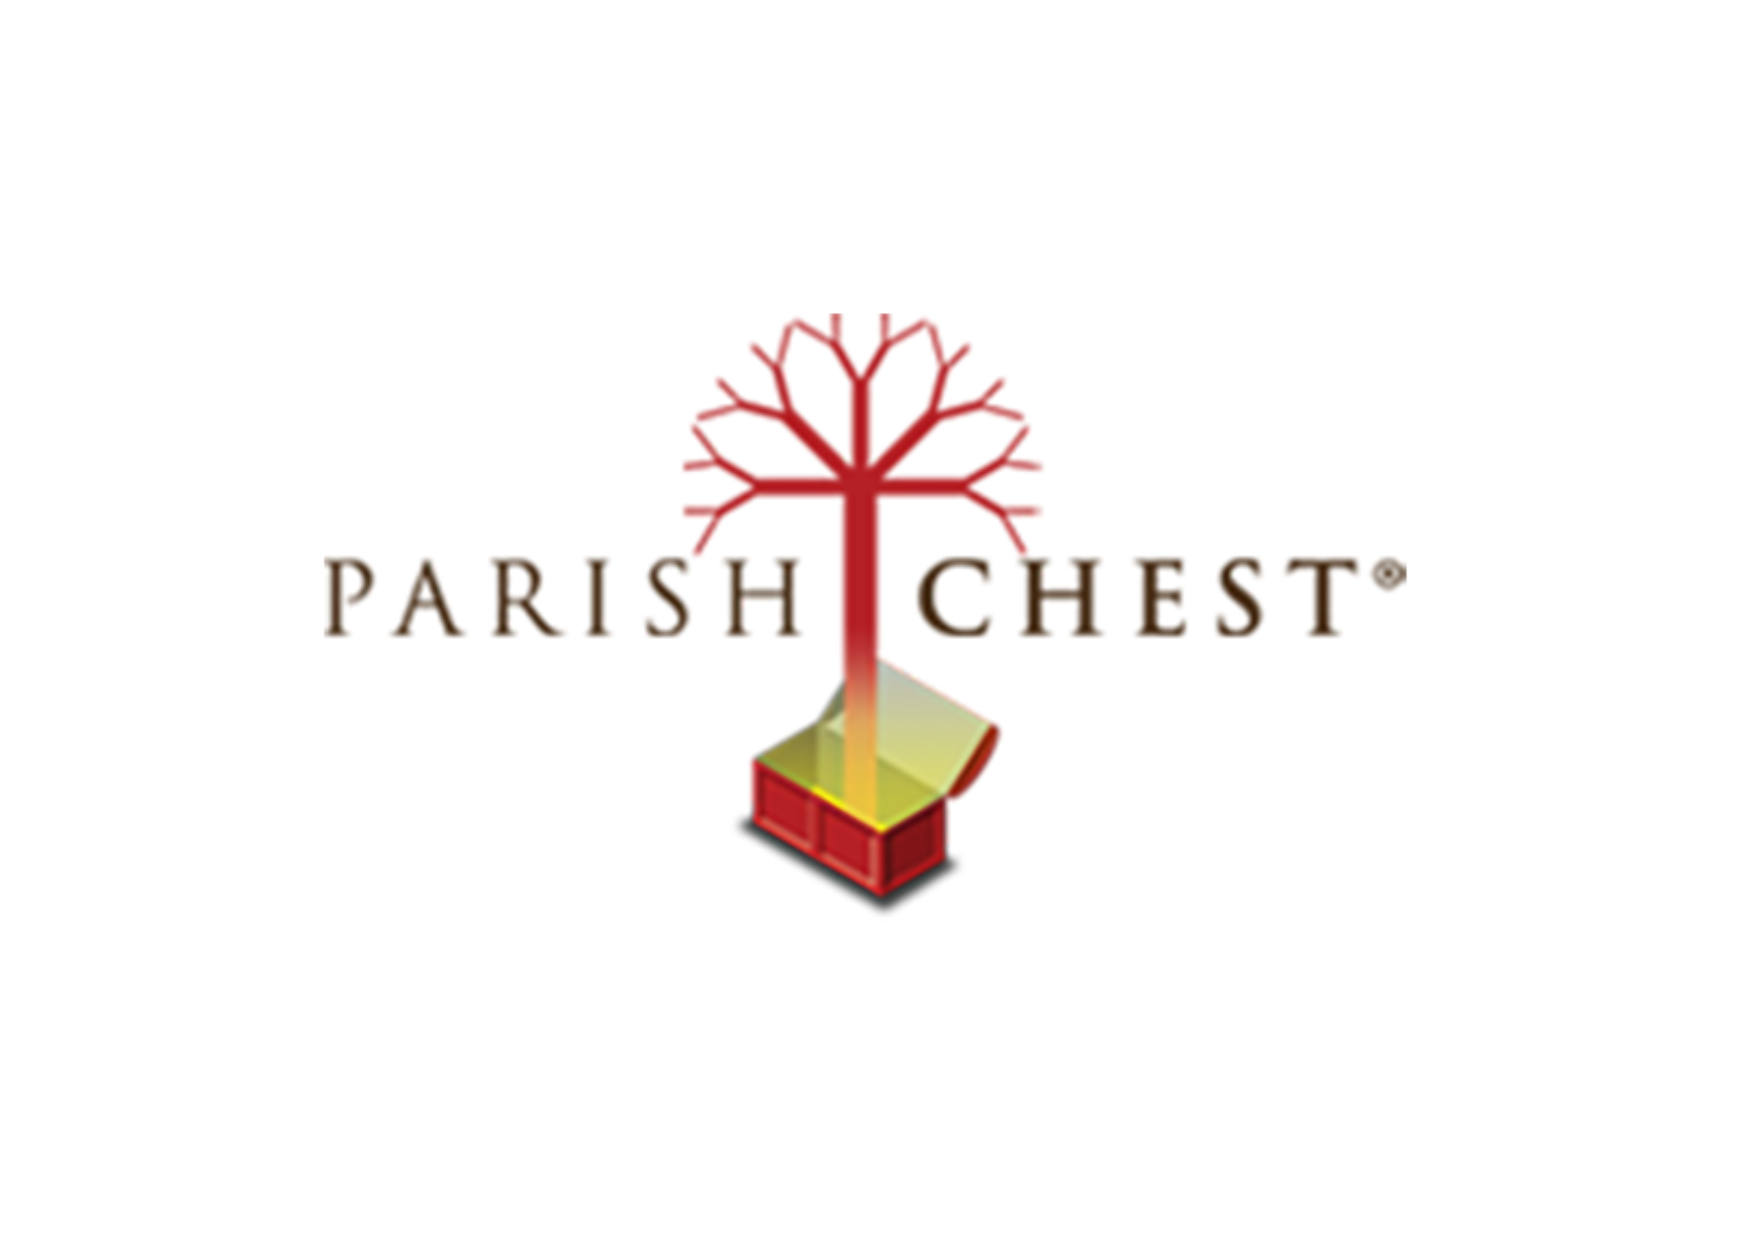 Parish Chest